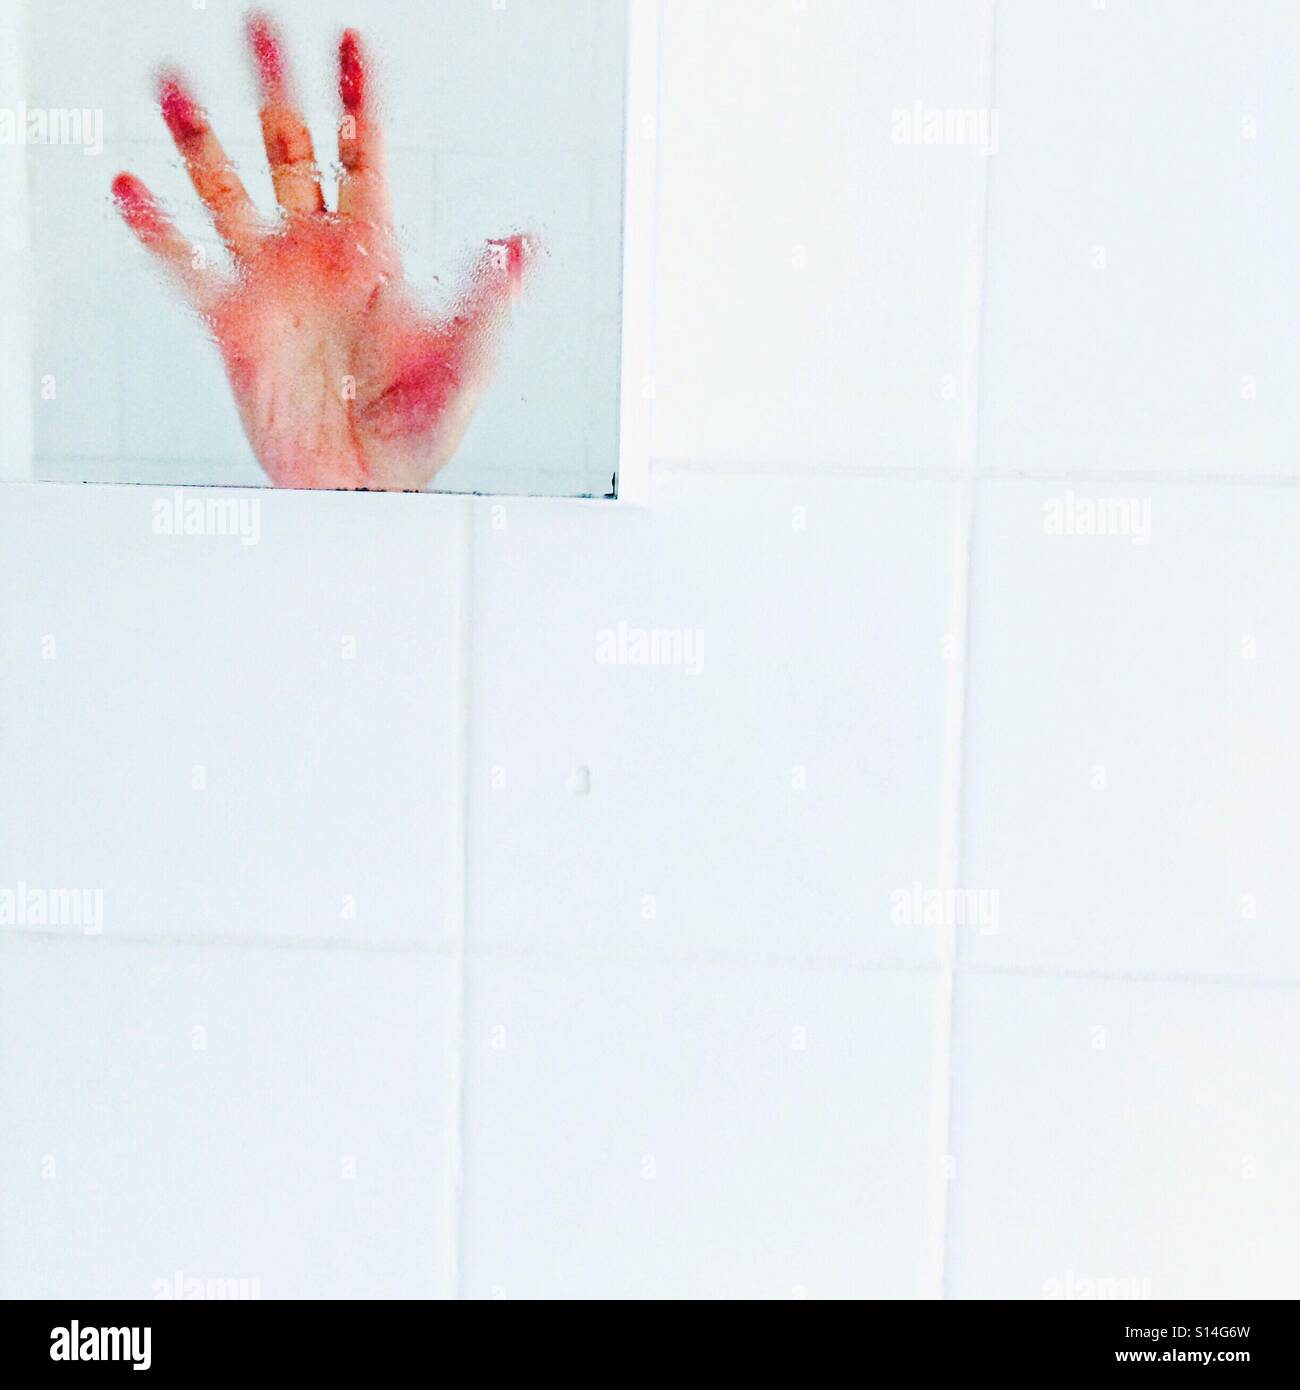 Haut les mains ! Une main reflétée dans un miroir de salle de bains sur du carrelage blanc Banque D'Images